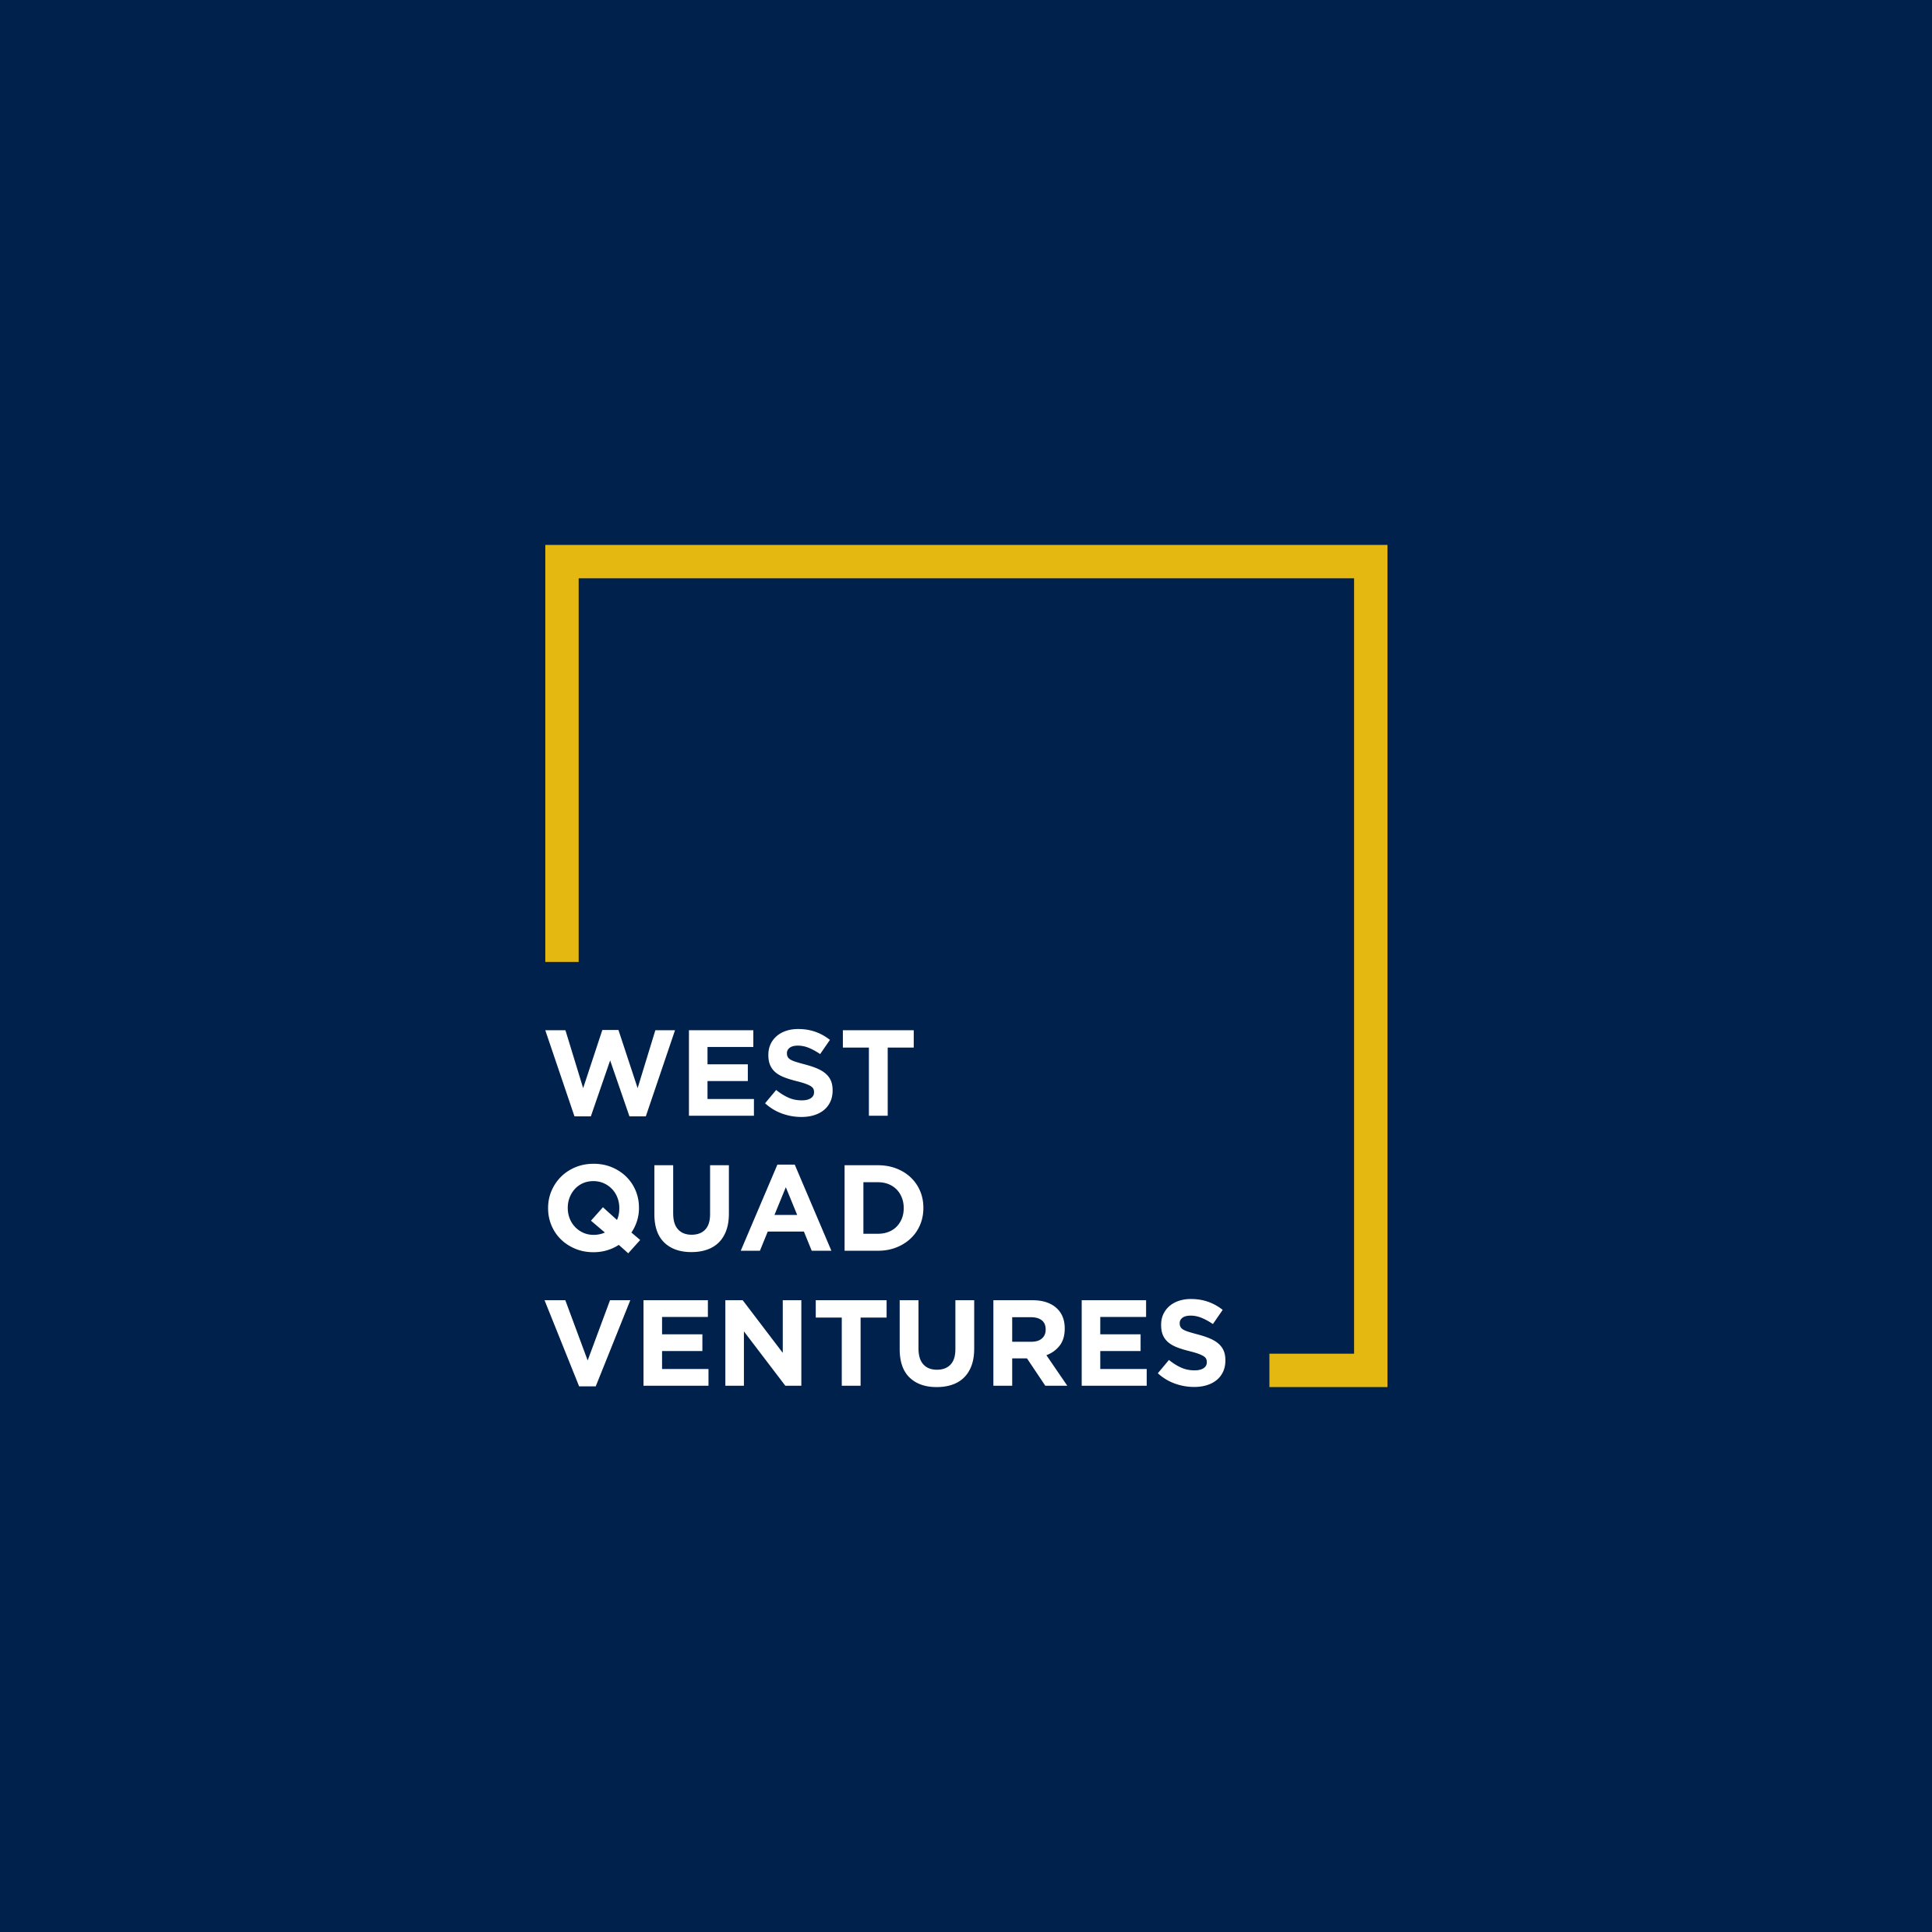 West Quad Ventures